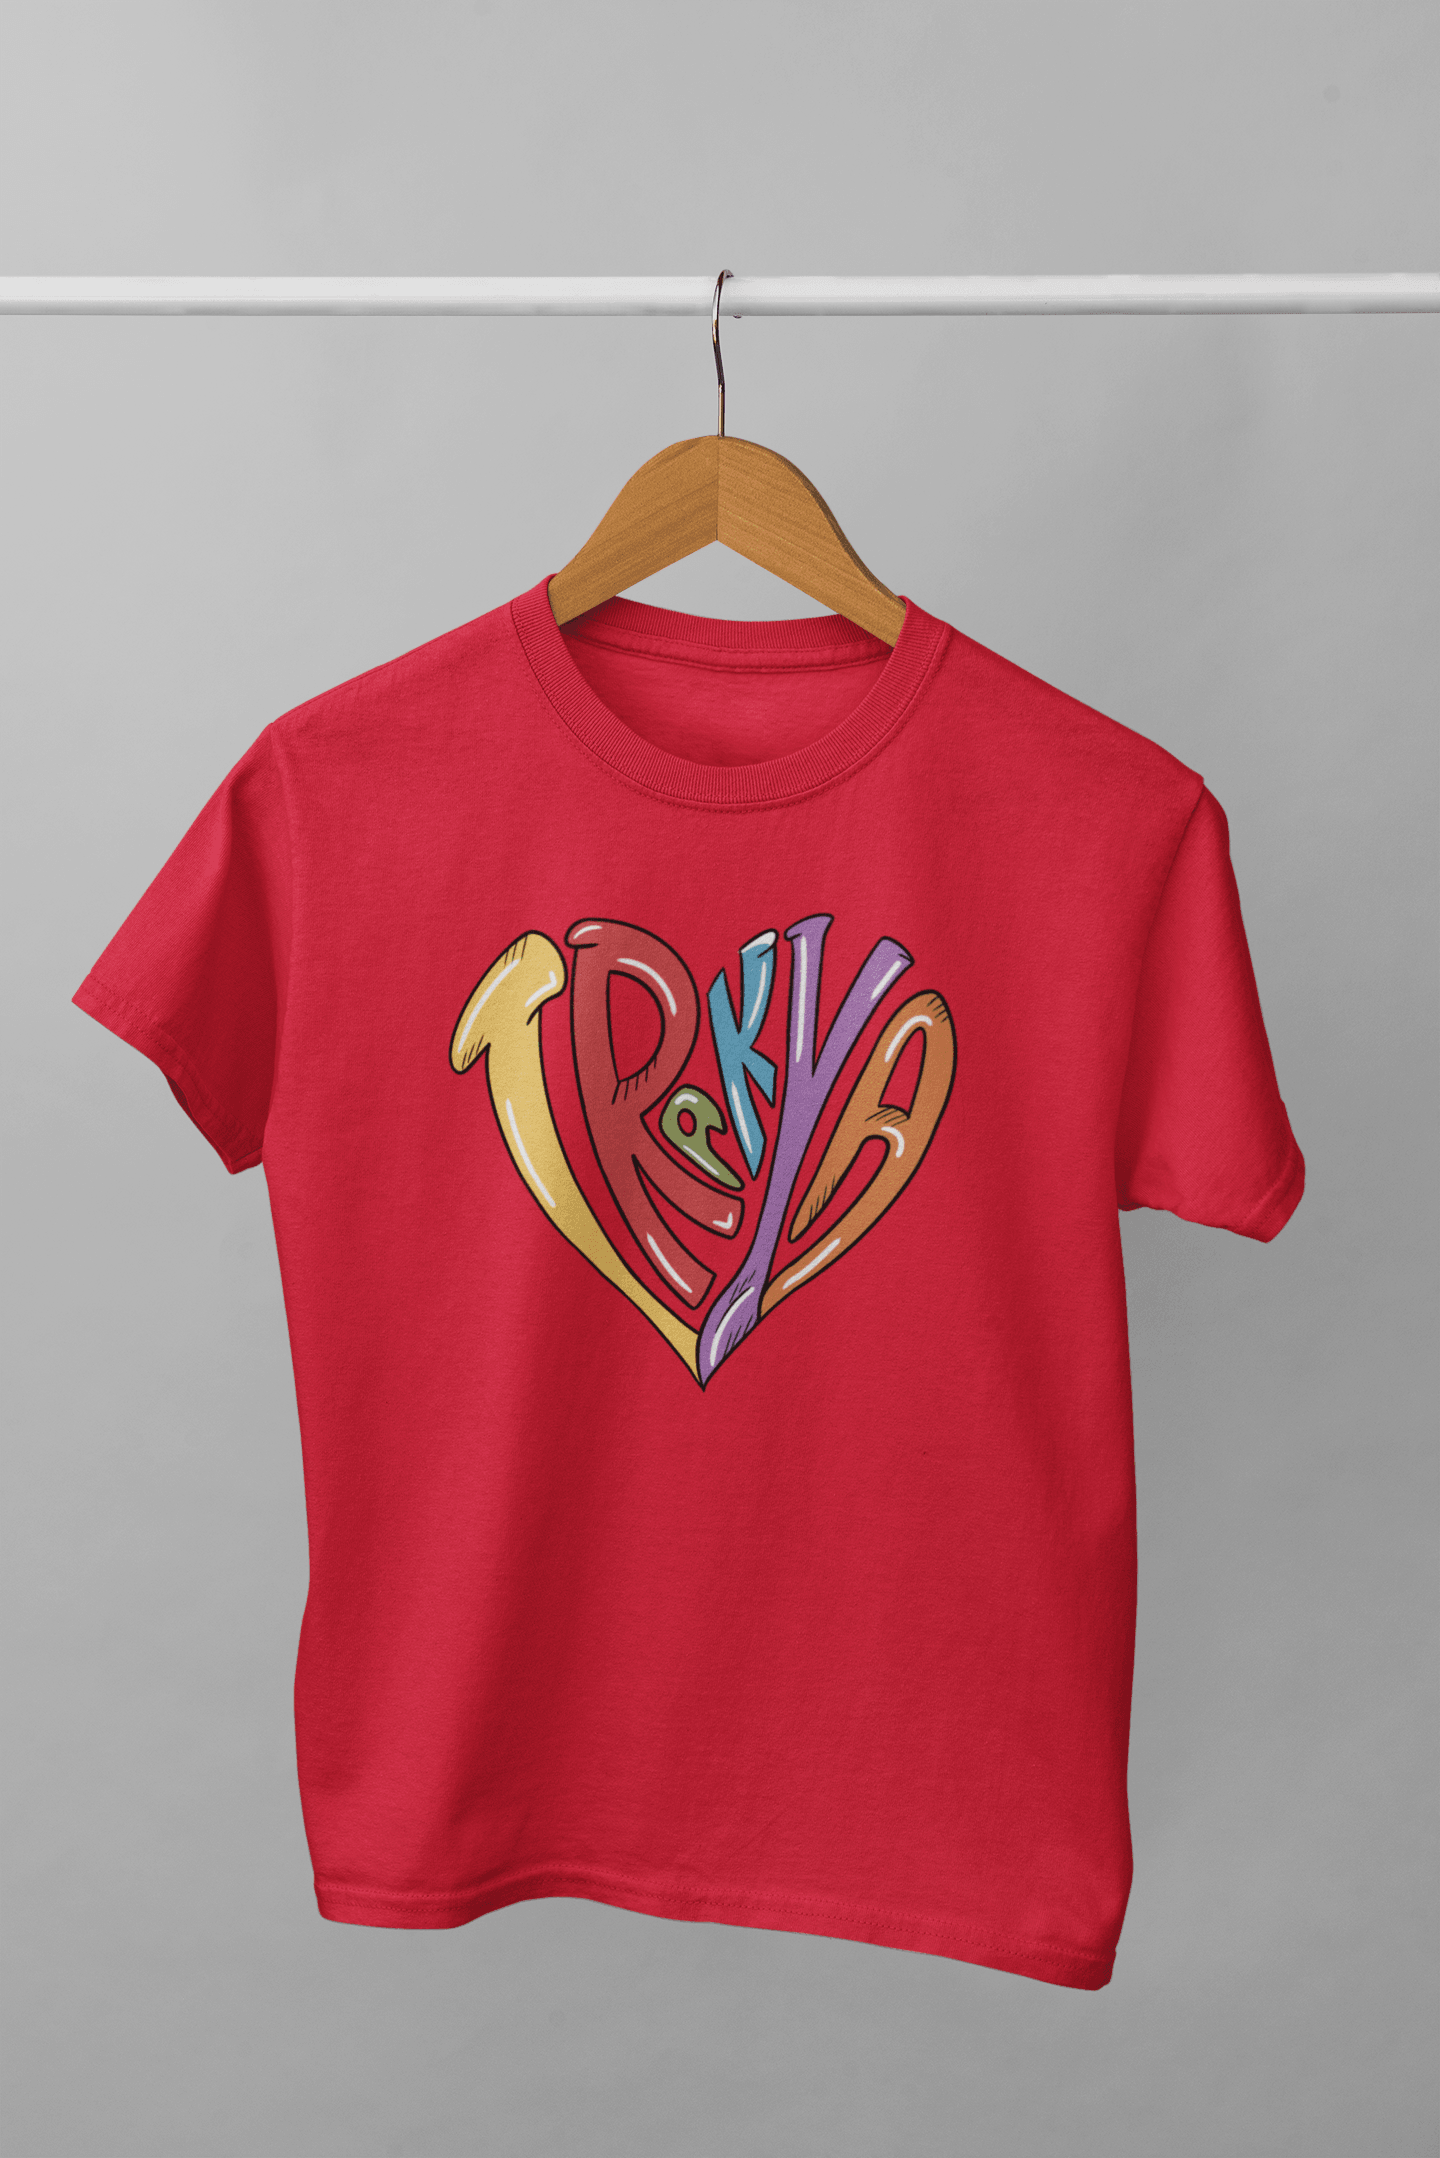 Trakya Kalp (Çocuk Tişörtü)